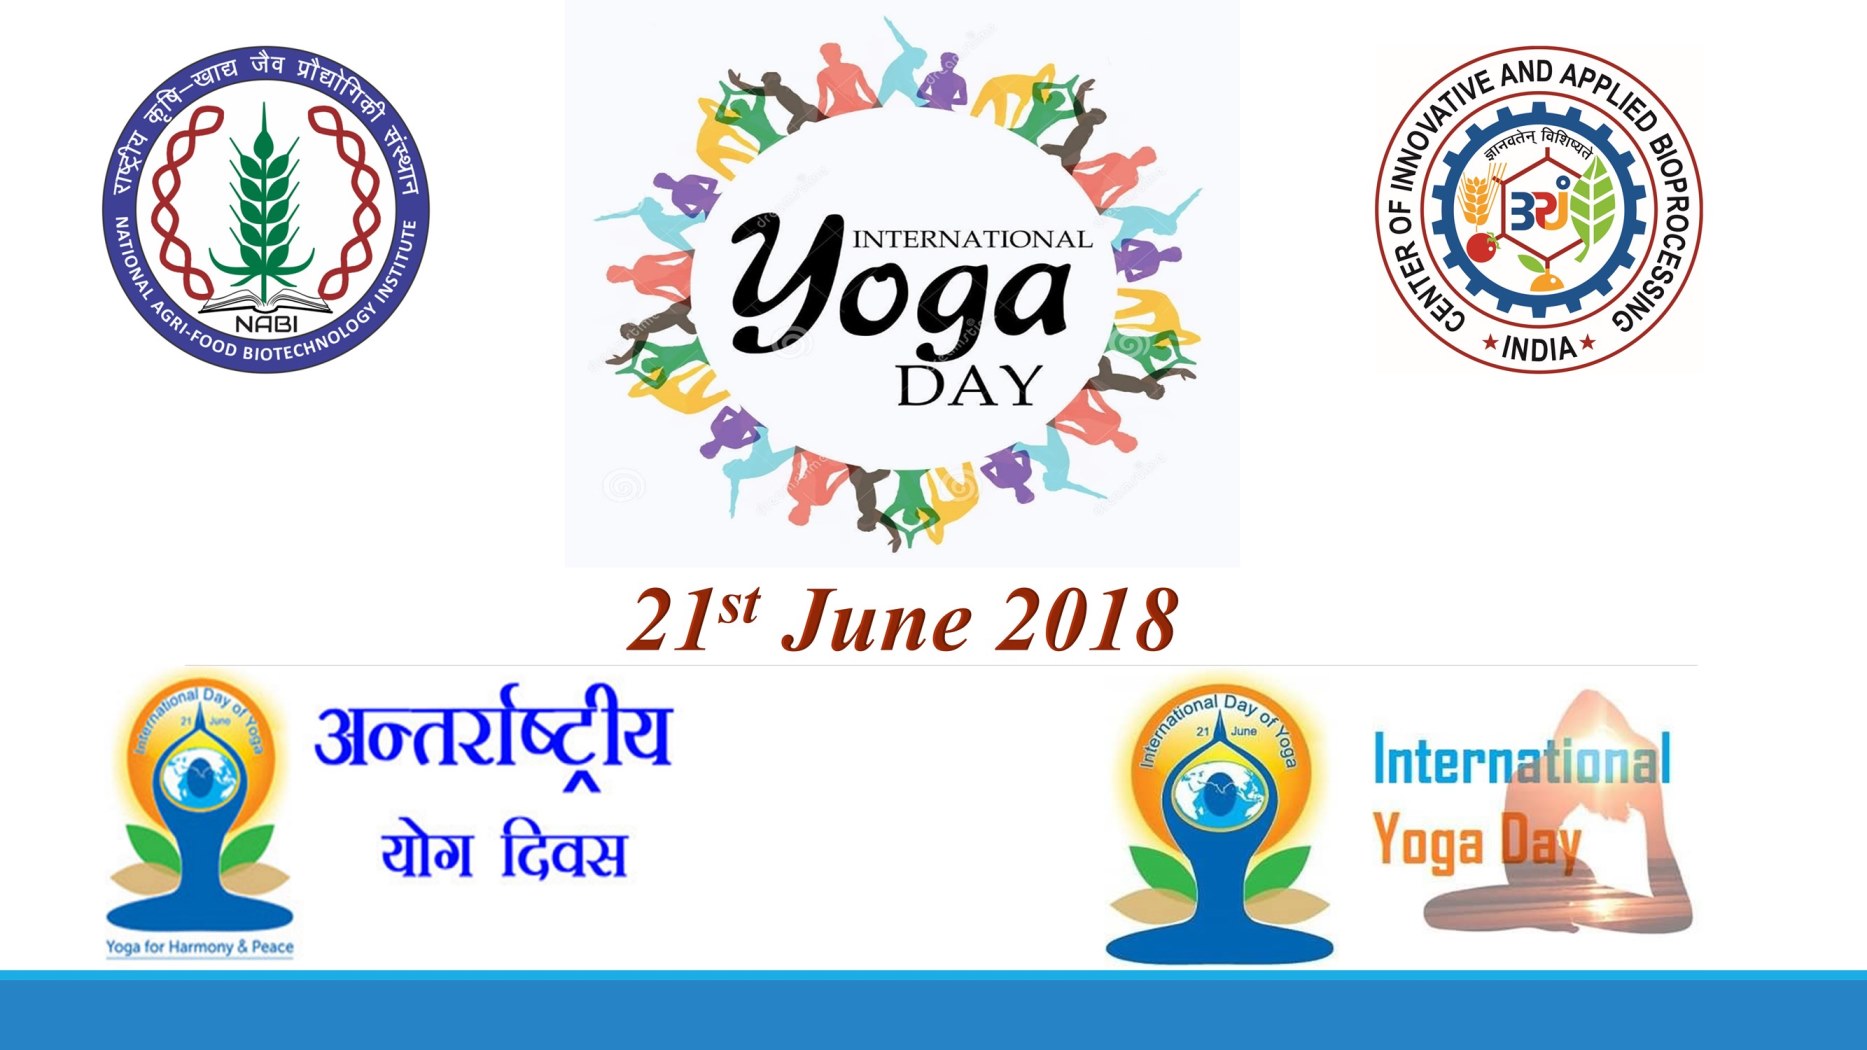 4th International Yoga Day